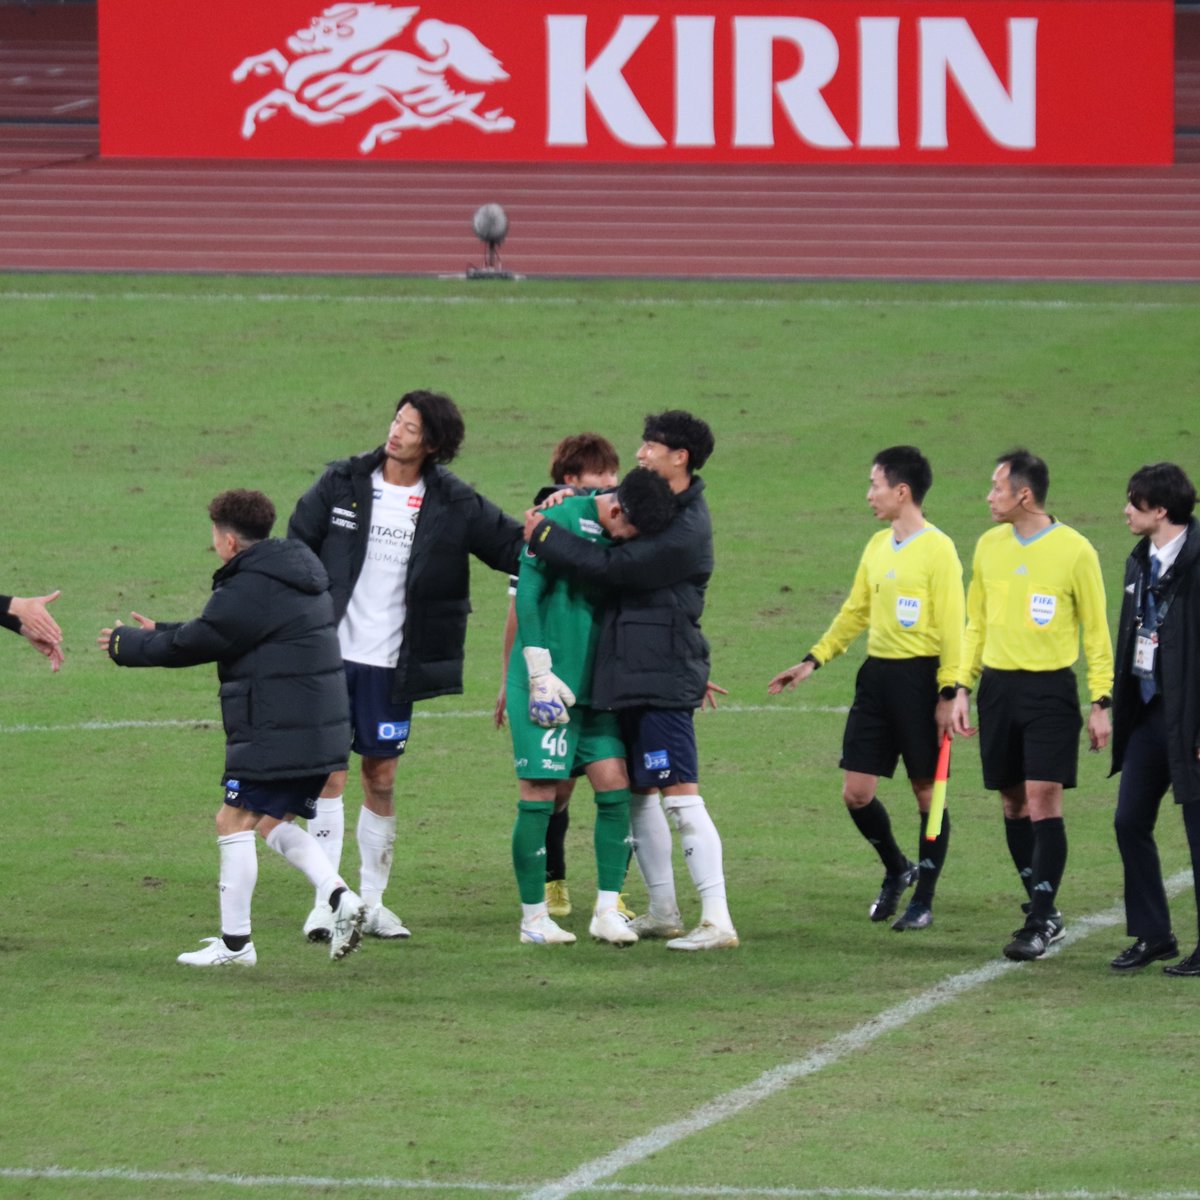 試合終了後の松本健太、古賀太陽、立田悠悟を見て泣きそうになった...